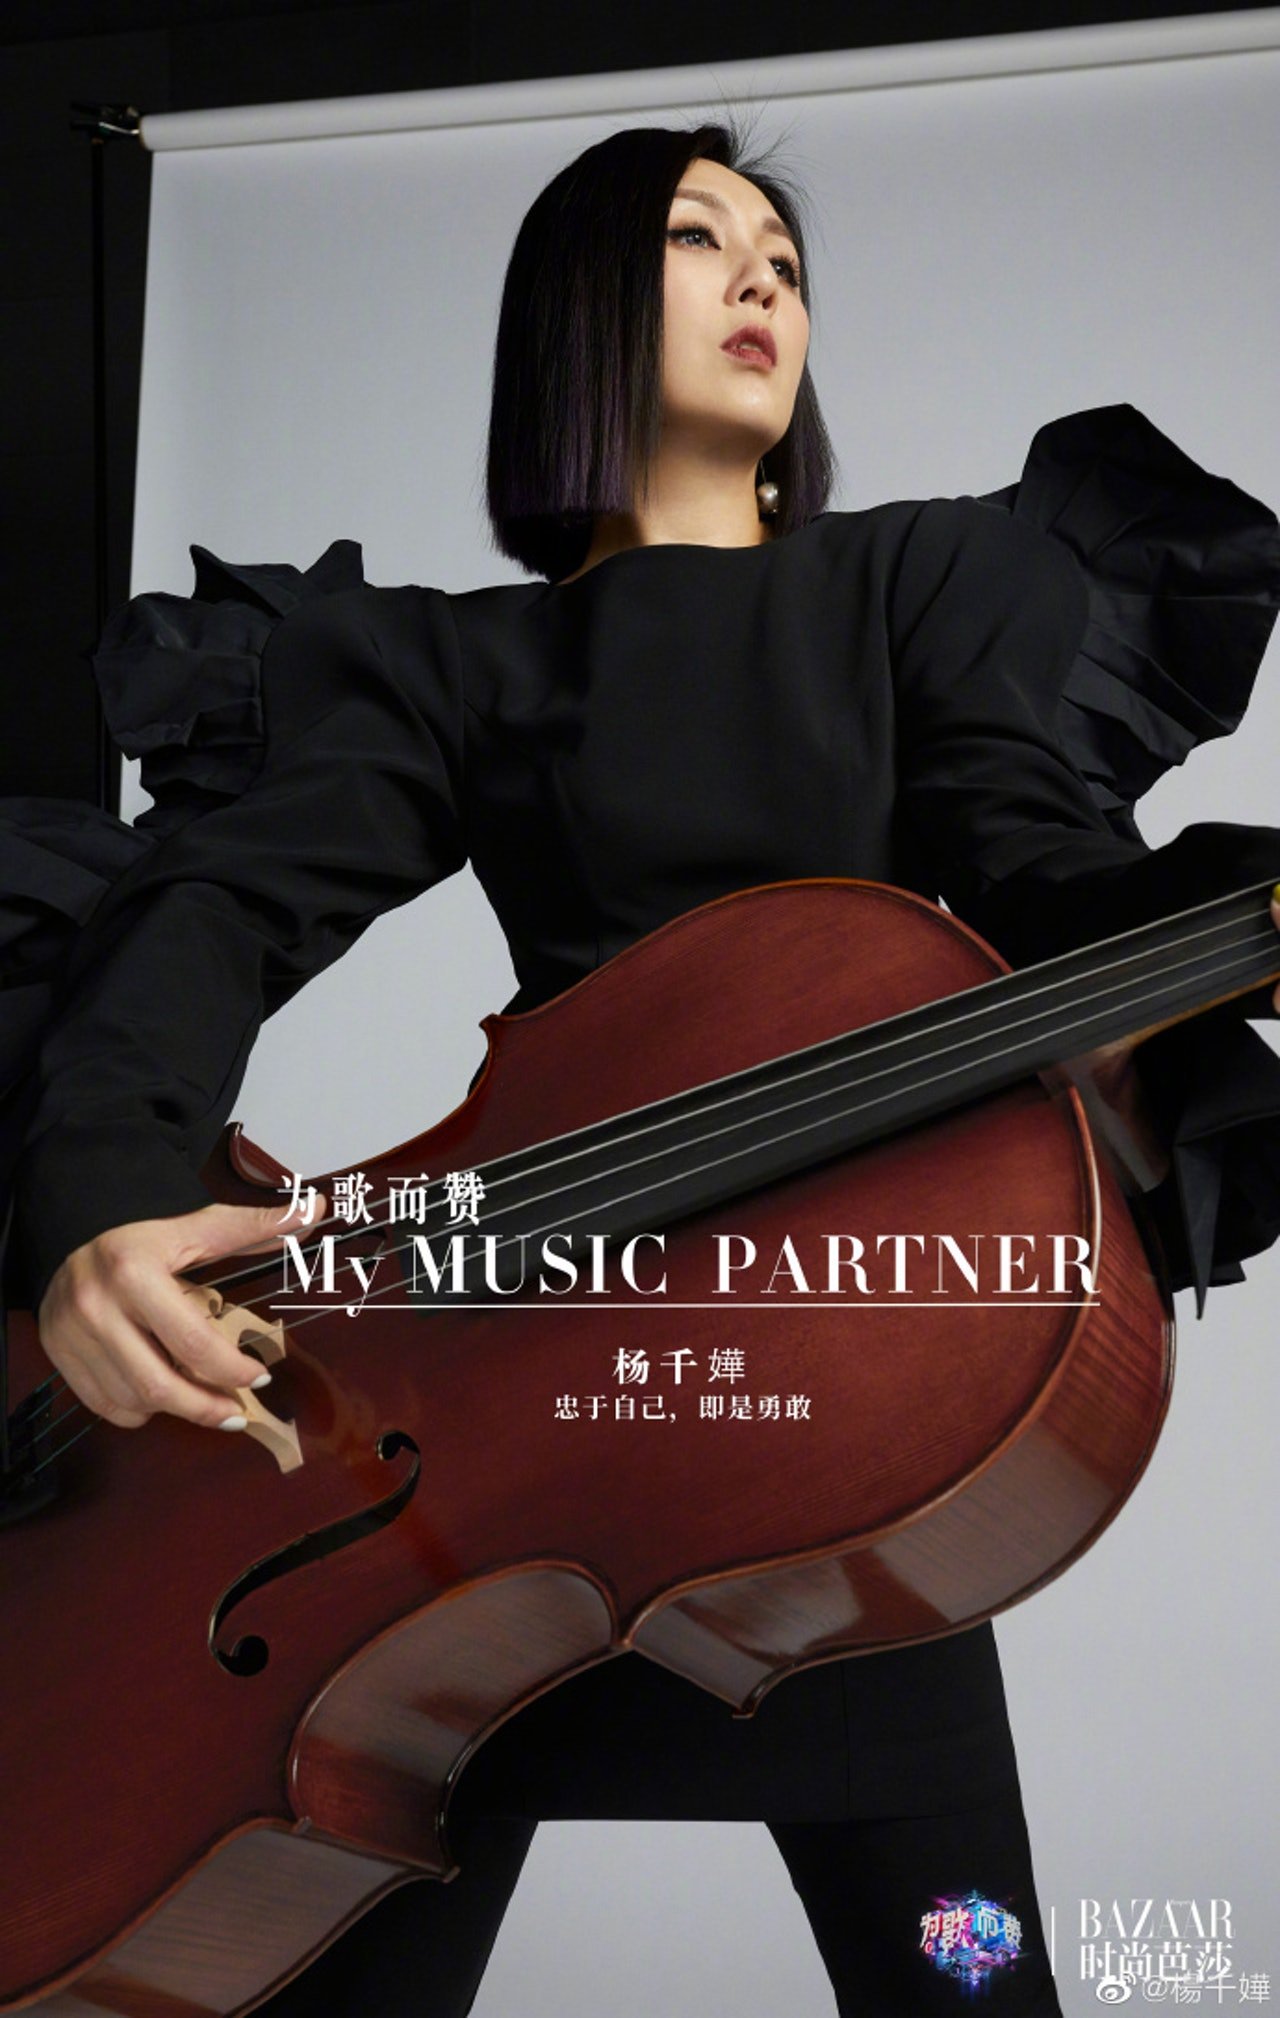 杨千嬅这张打横拿著大提琴的照片惹议。